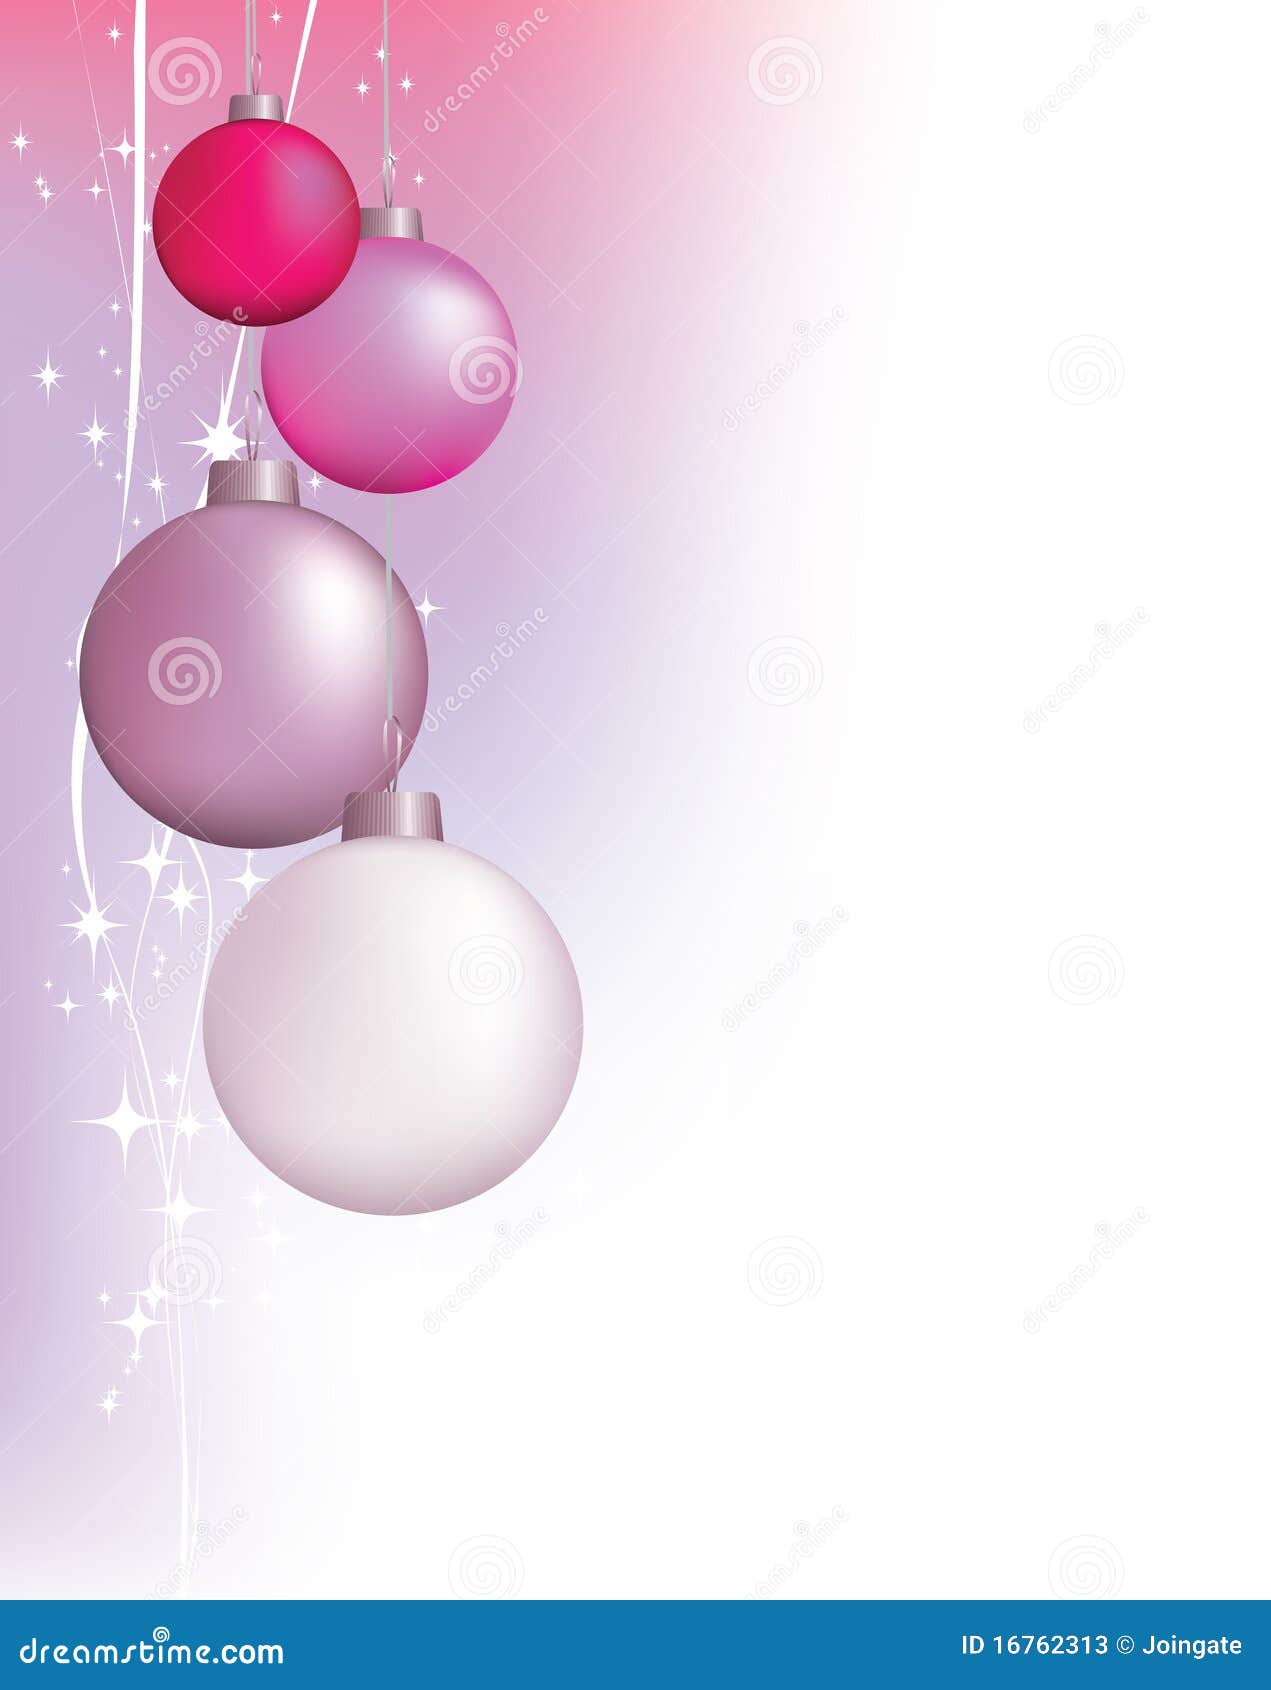 Với thiết kế chuyên nghiệp, hình nền Giáng Sinh màu hồng này sẽ khiến bạn phát hiện ra tình yêu và sức sống trong mùa lễ hội. Hãy tận hưởng không gian rực rỡ và sáng tạo của hình nền này, để mang đến một mùa Giáng Sinh đáng nhớ cho mọi người.